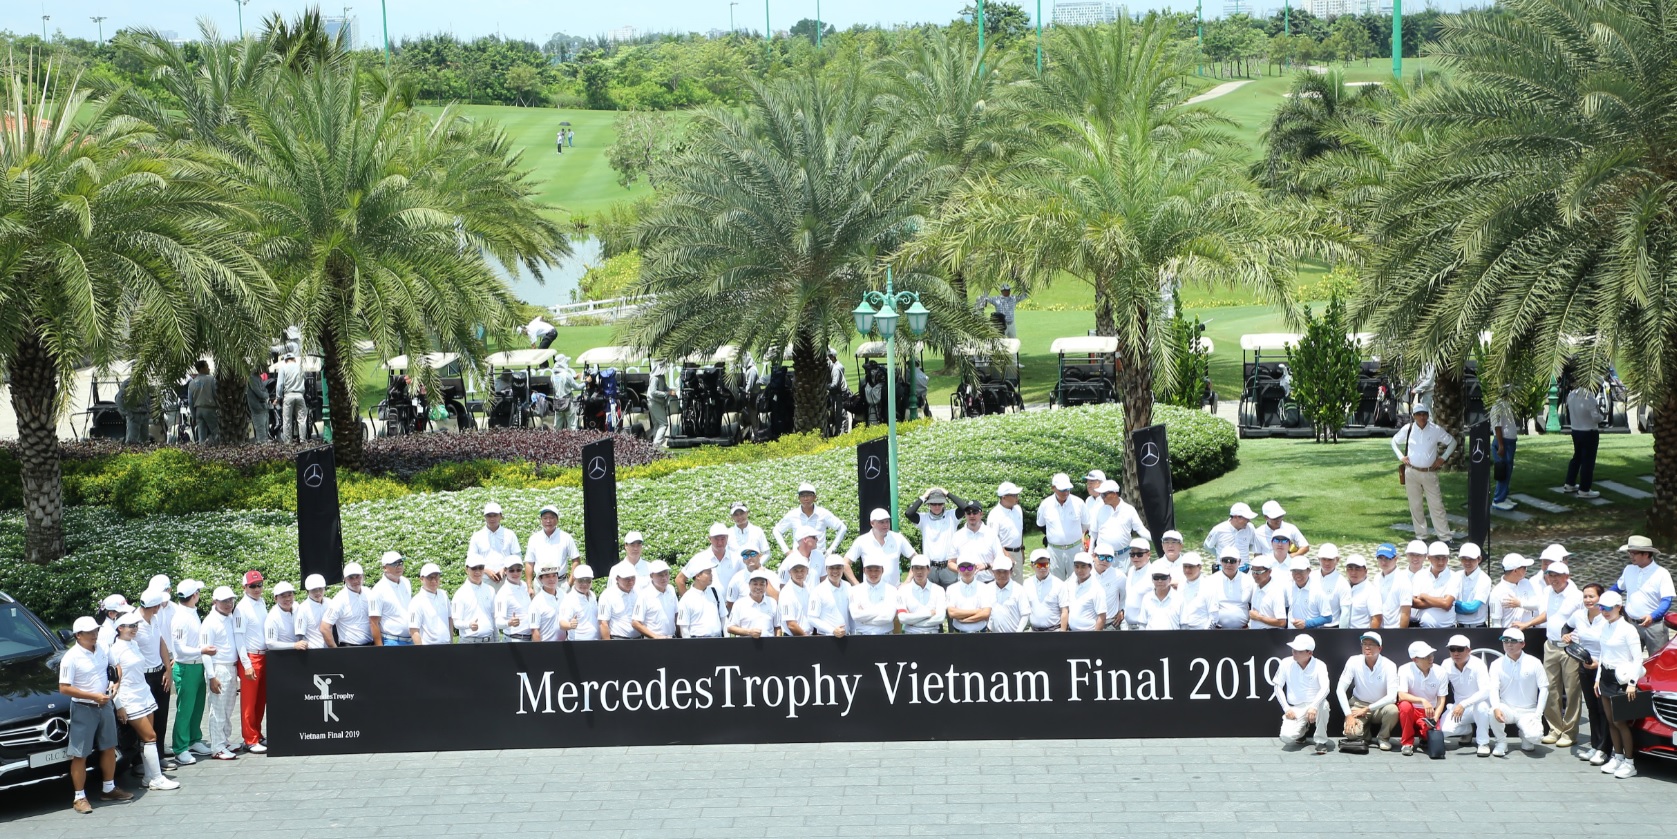 Lộ diện 7 golfer Việt Nam tham dự VCK MercedesTrophy châu Á 2019